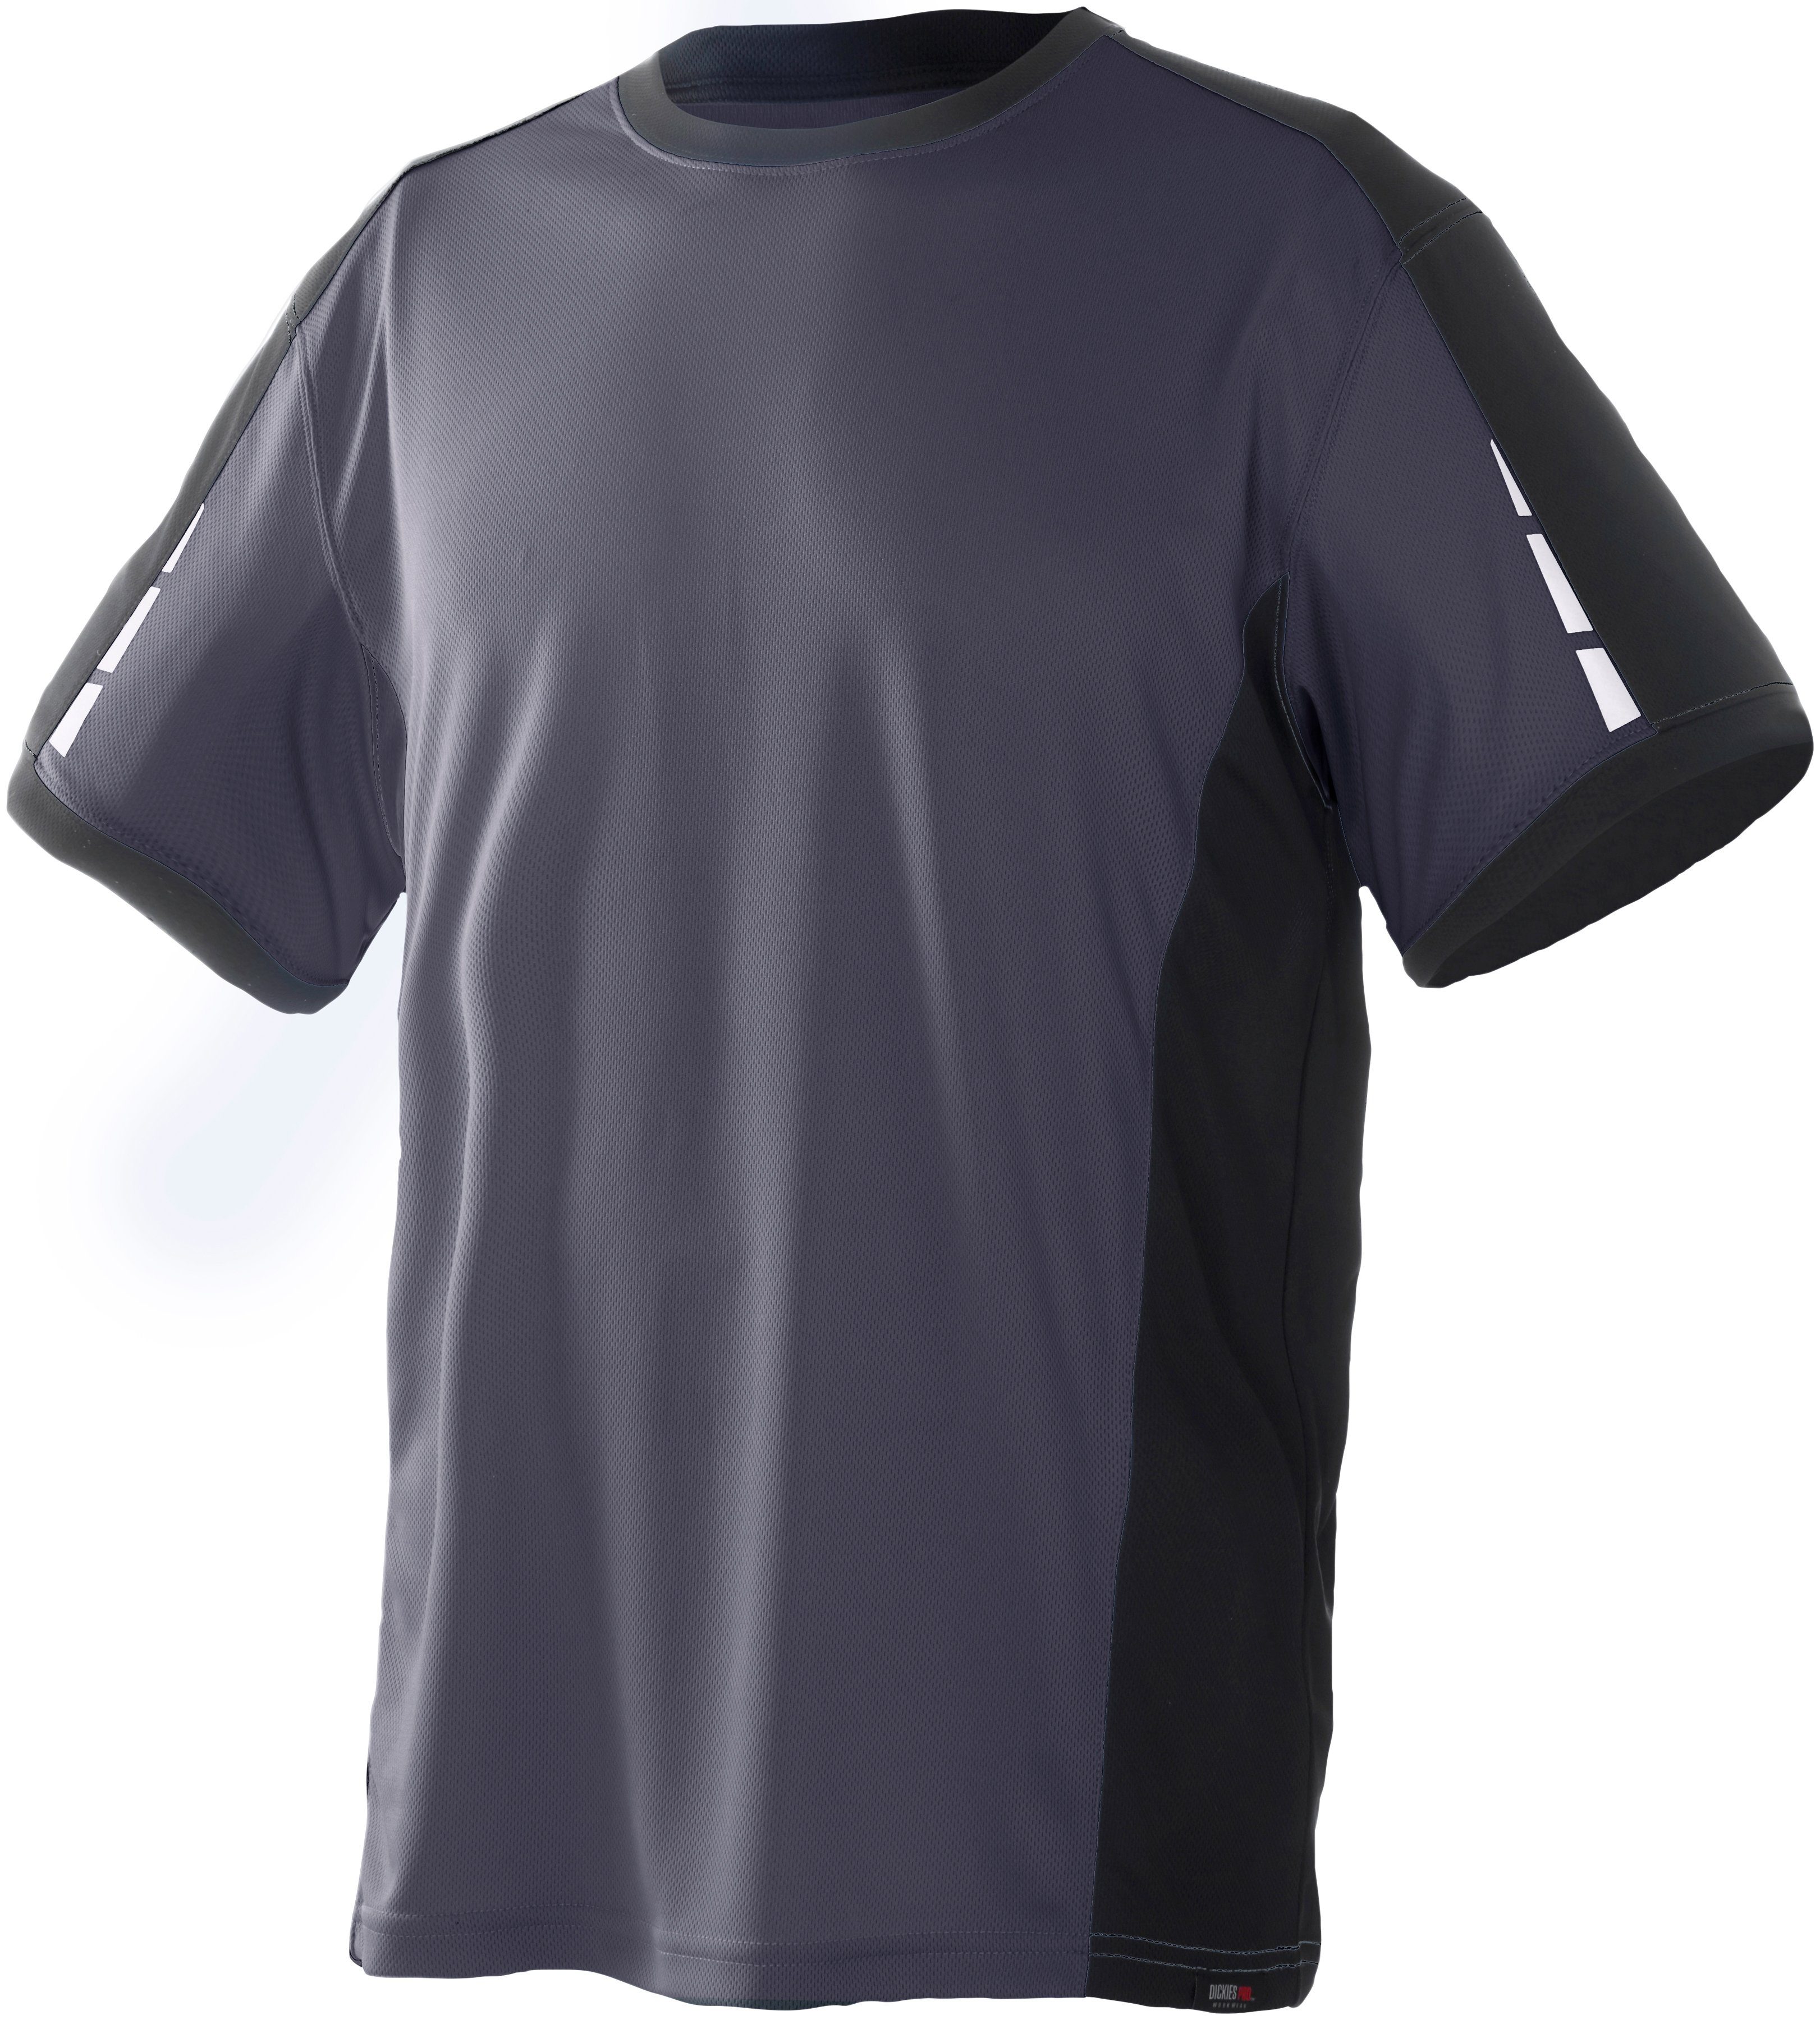 Dickies T-Shirt Pro mit Ärmeln den reflektierenden grau-schwarz Details an